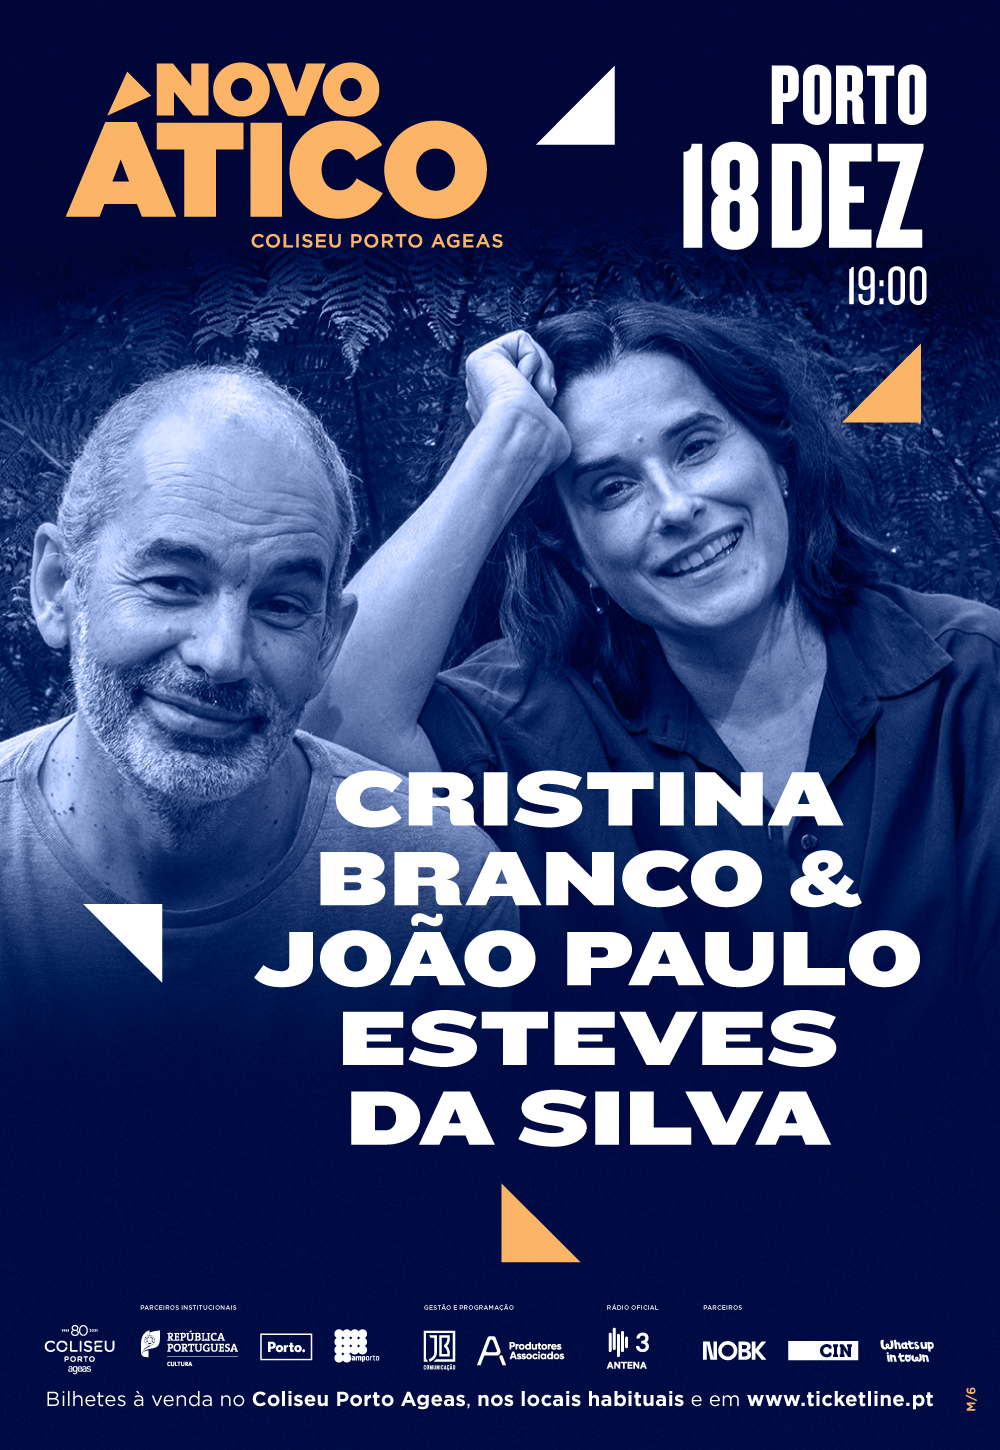 Cristina Branco & João Paulo Esteves da Silva, 18DEZ, Novo Ático